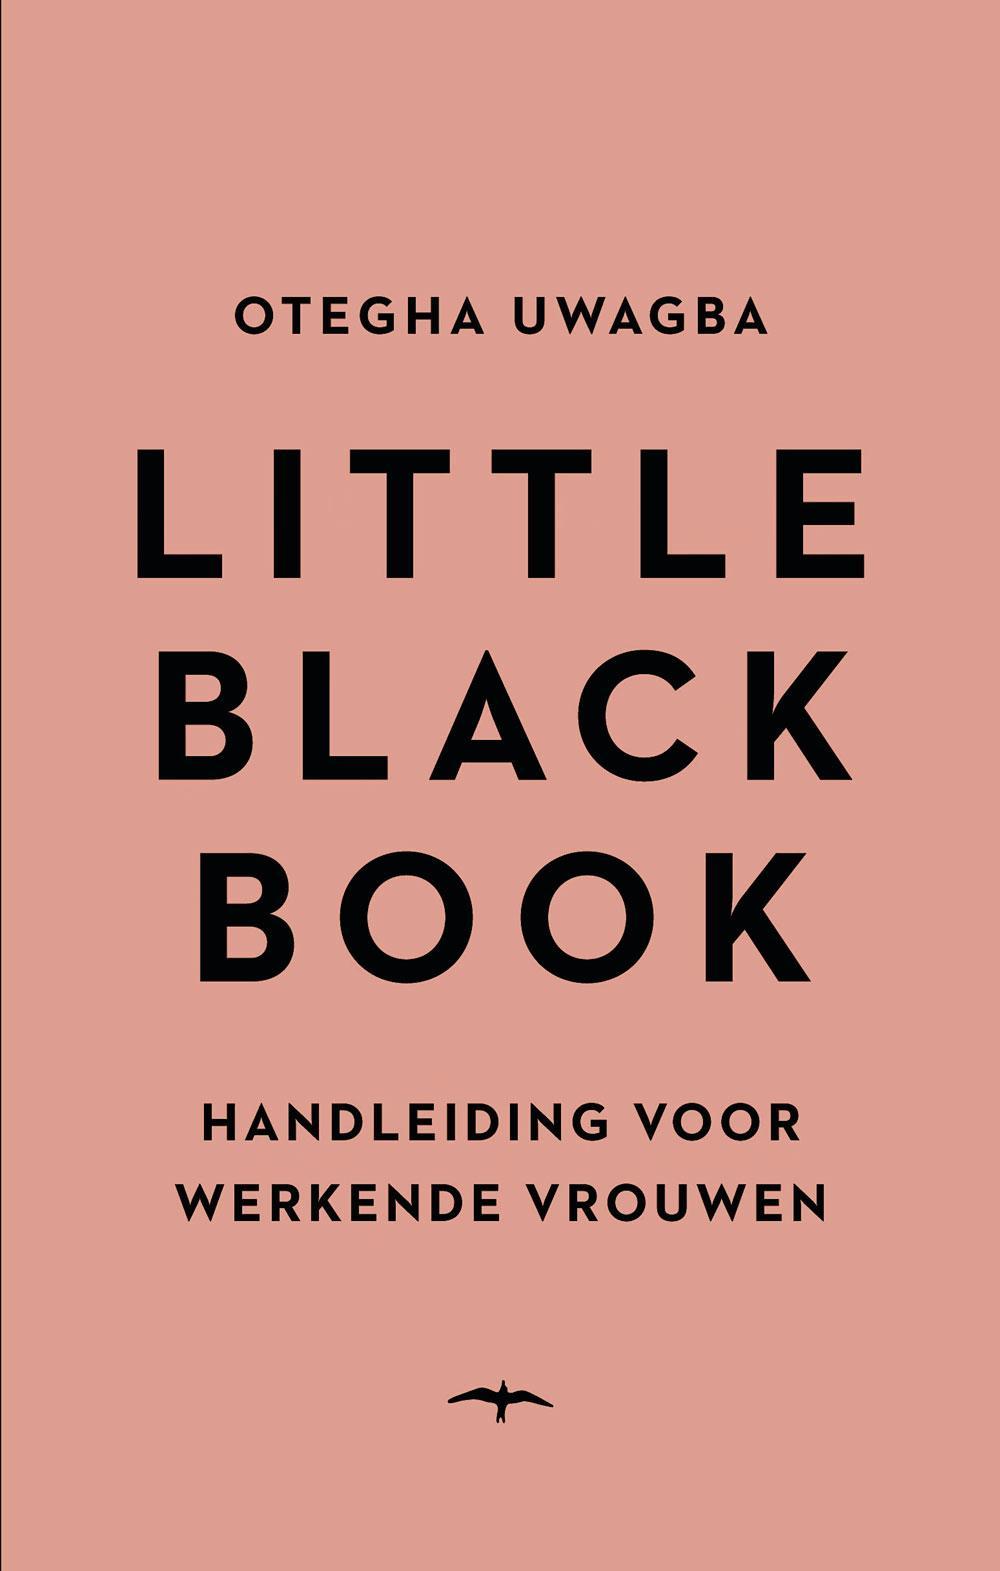 Little Black Book, Otegha Uwagba, uitg. Thomas Rap, 9,99 euro.